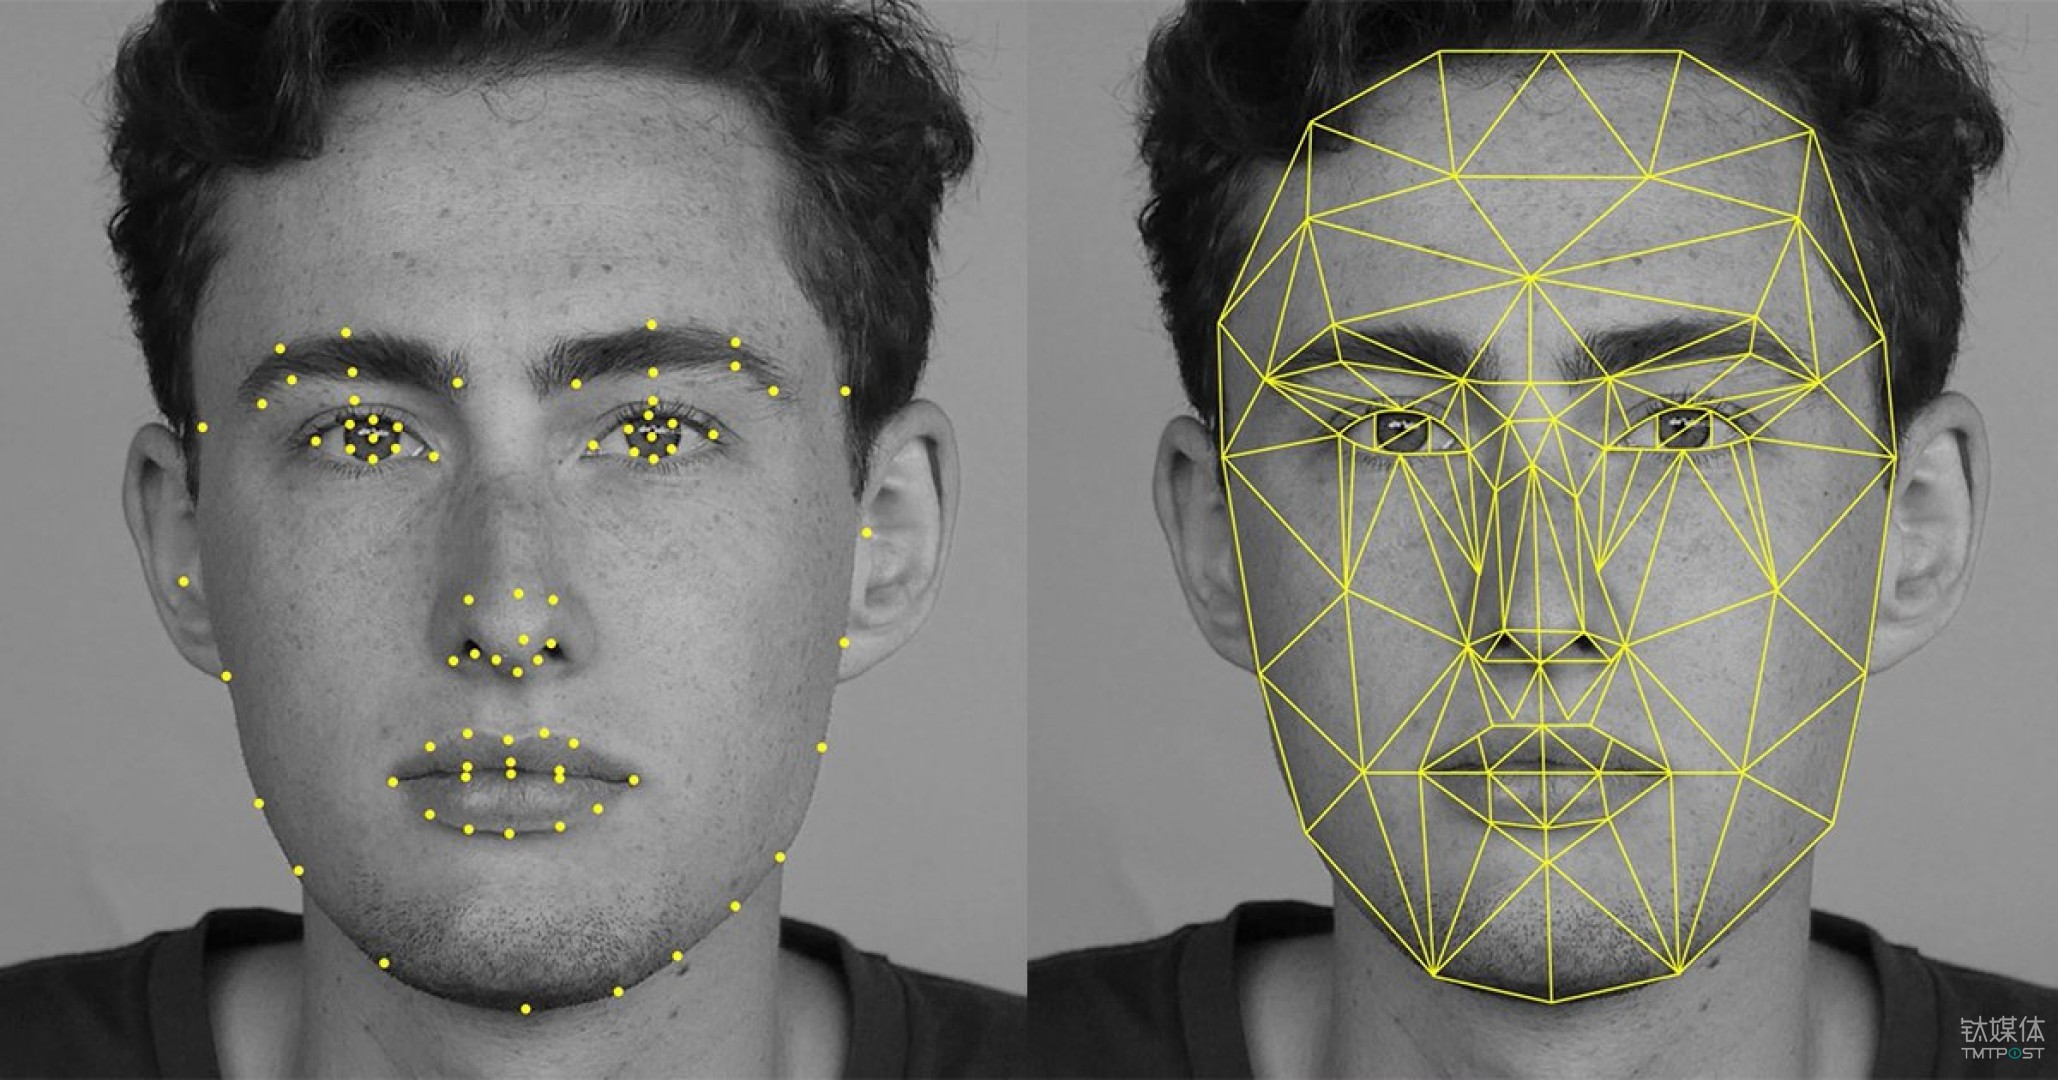 Reconhecimento facial/do rosto